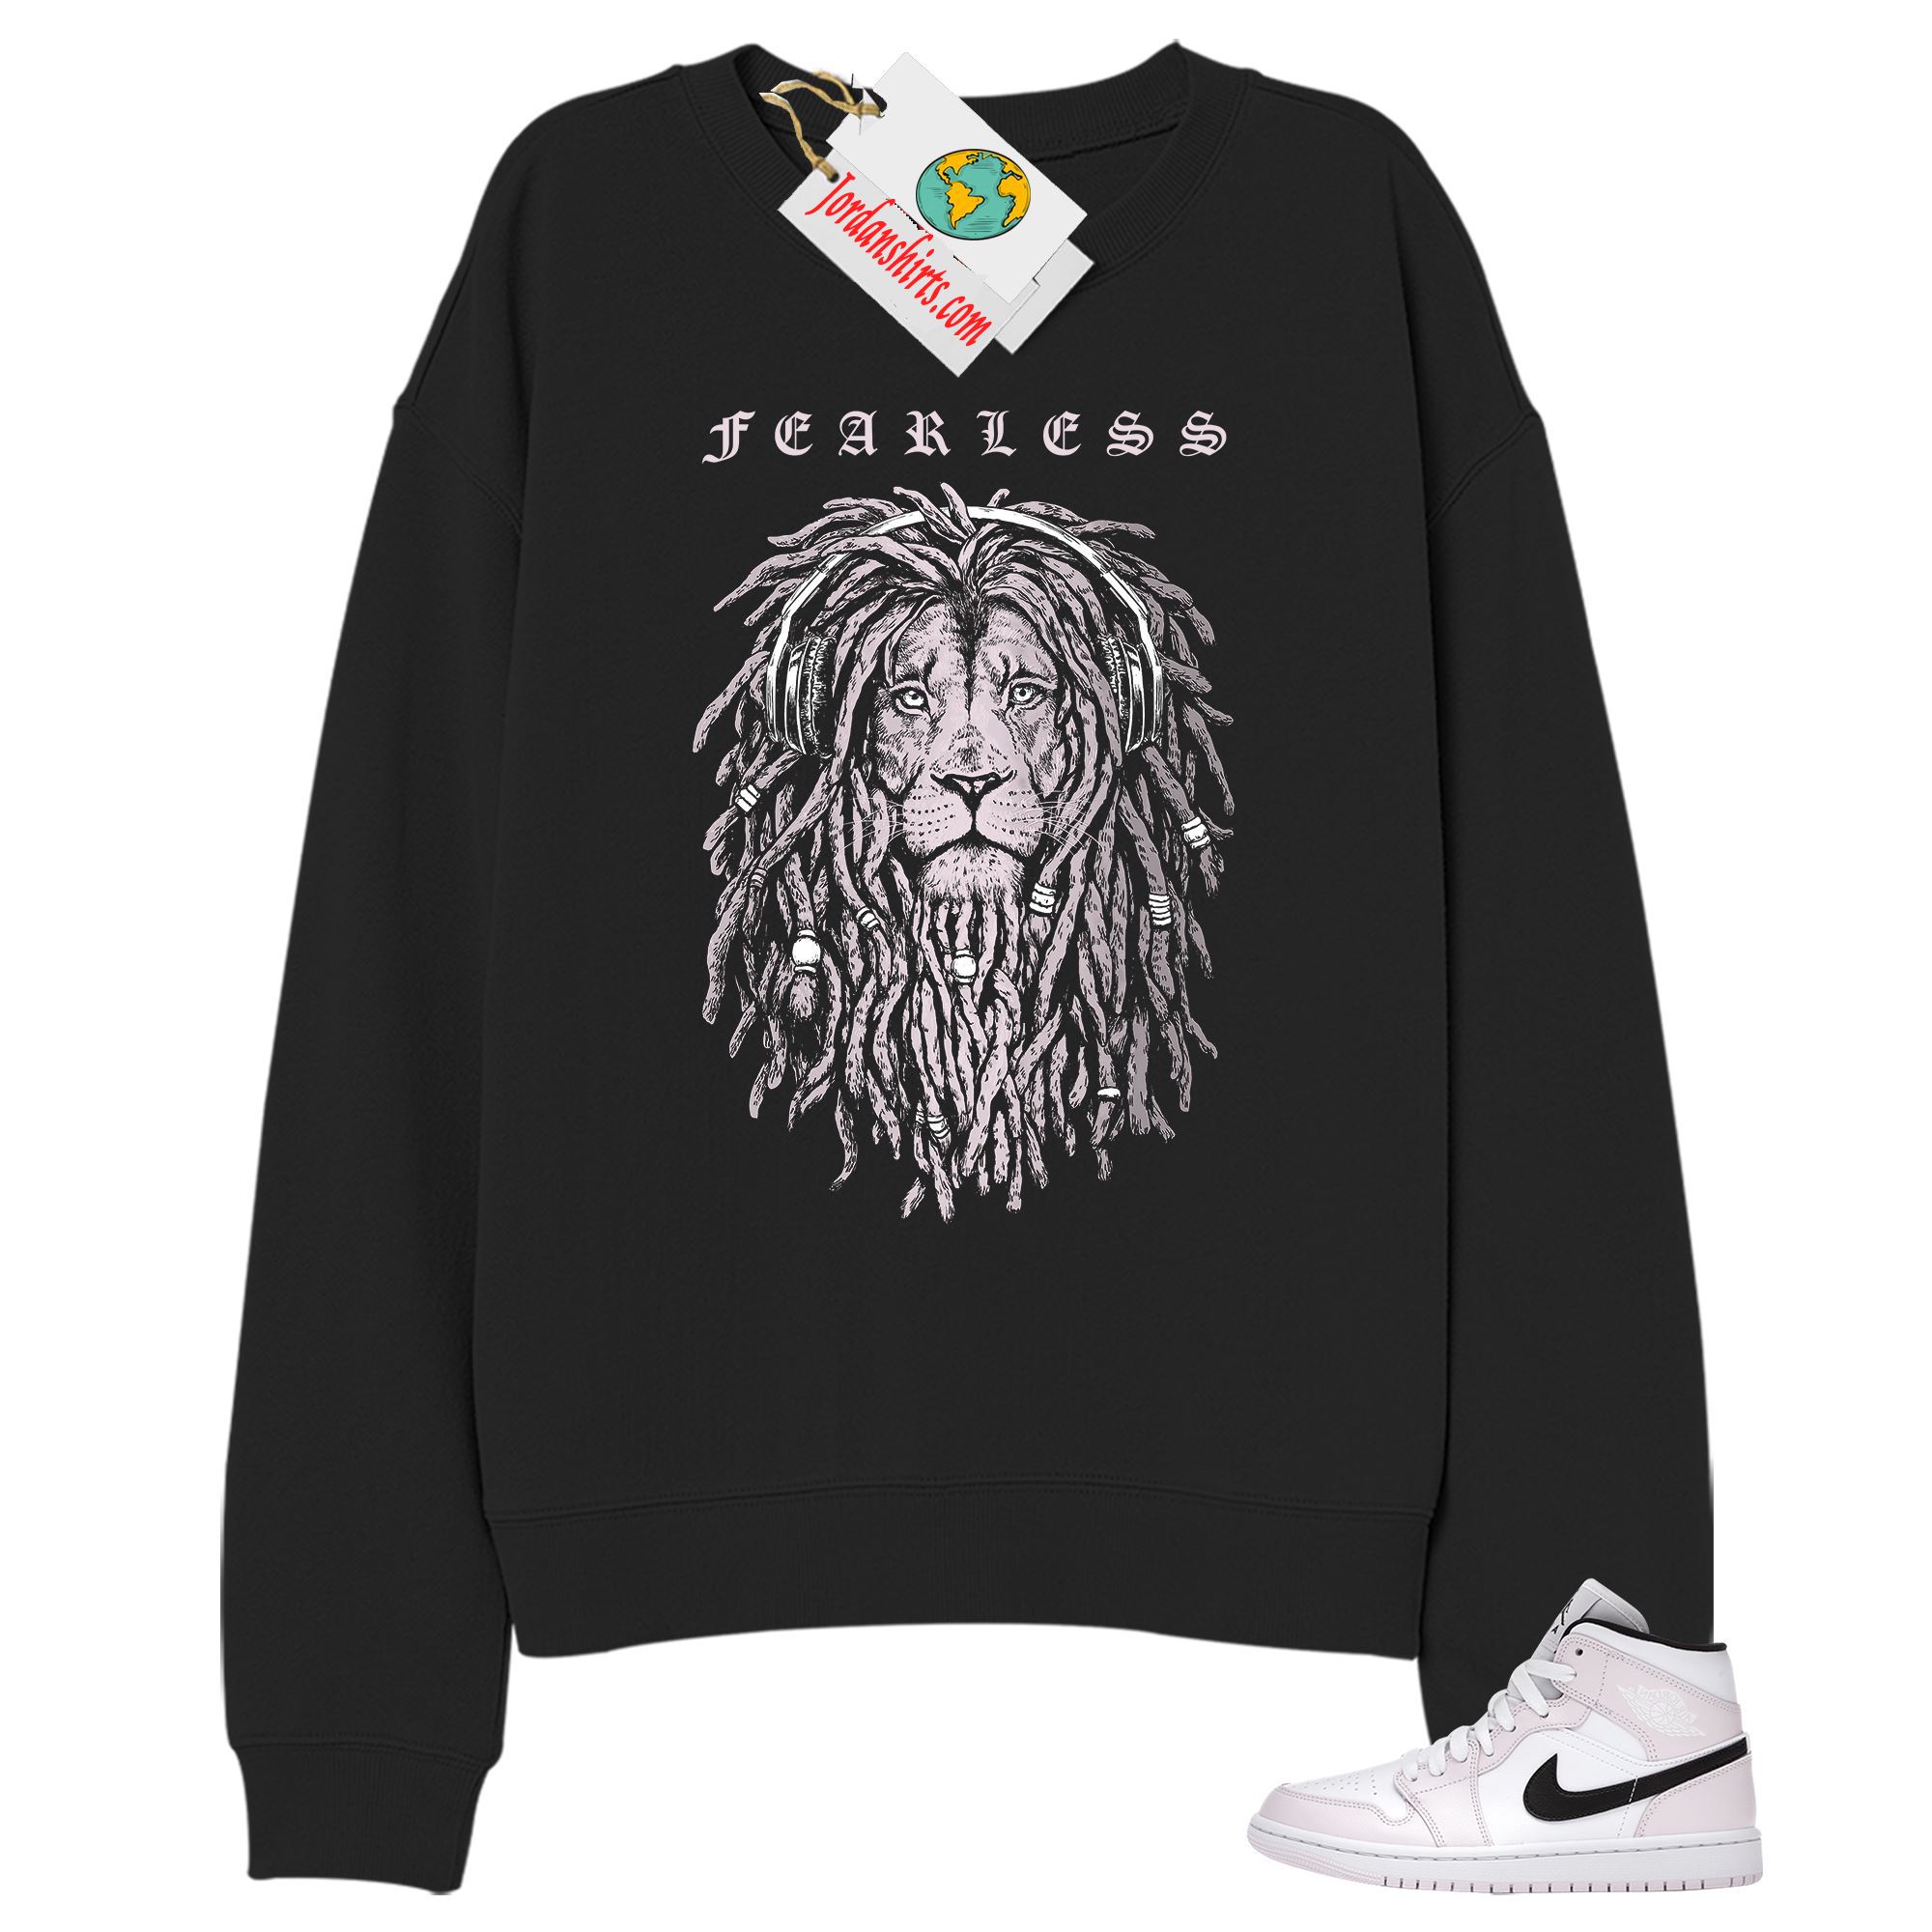 Jordan 1 Sweatshirt, Fearless Lion Black Sweatshirt Air Jordan 1 Barely Rose 1s Plus Size Up To 5xl